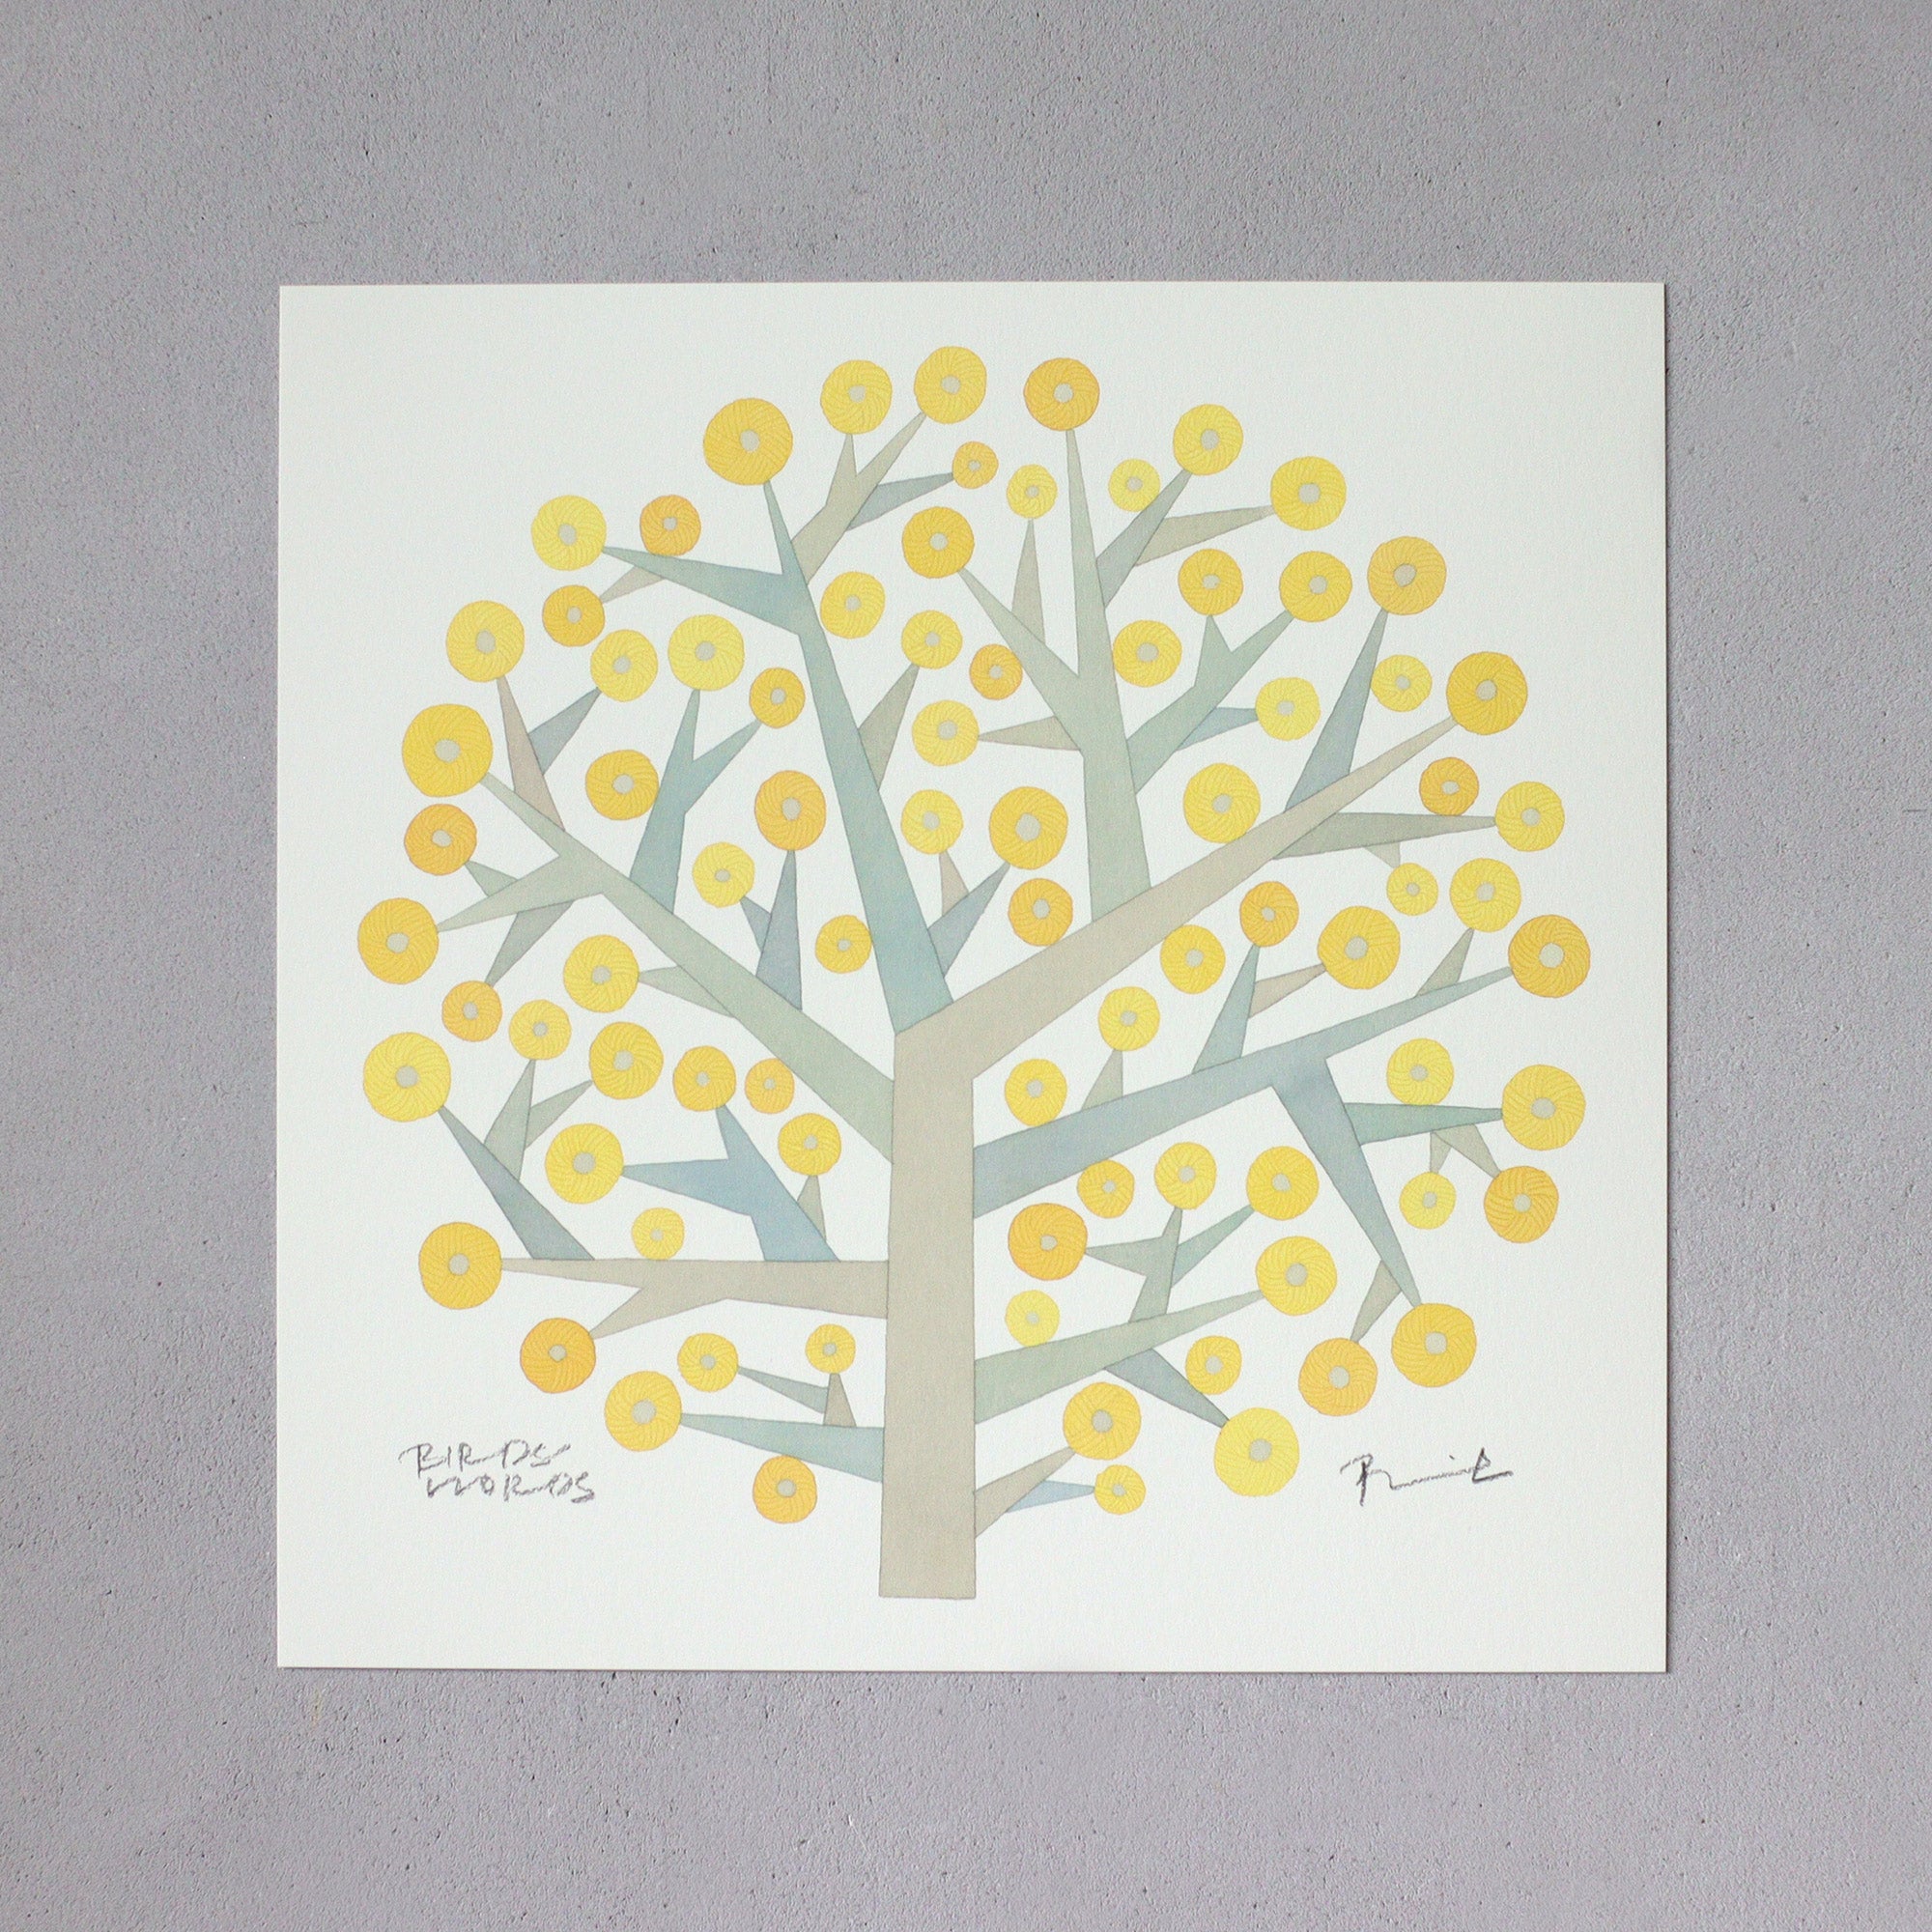 ポスター 30cm / TREE OF HOPE – BIRDS' WORDS